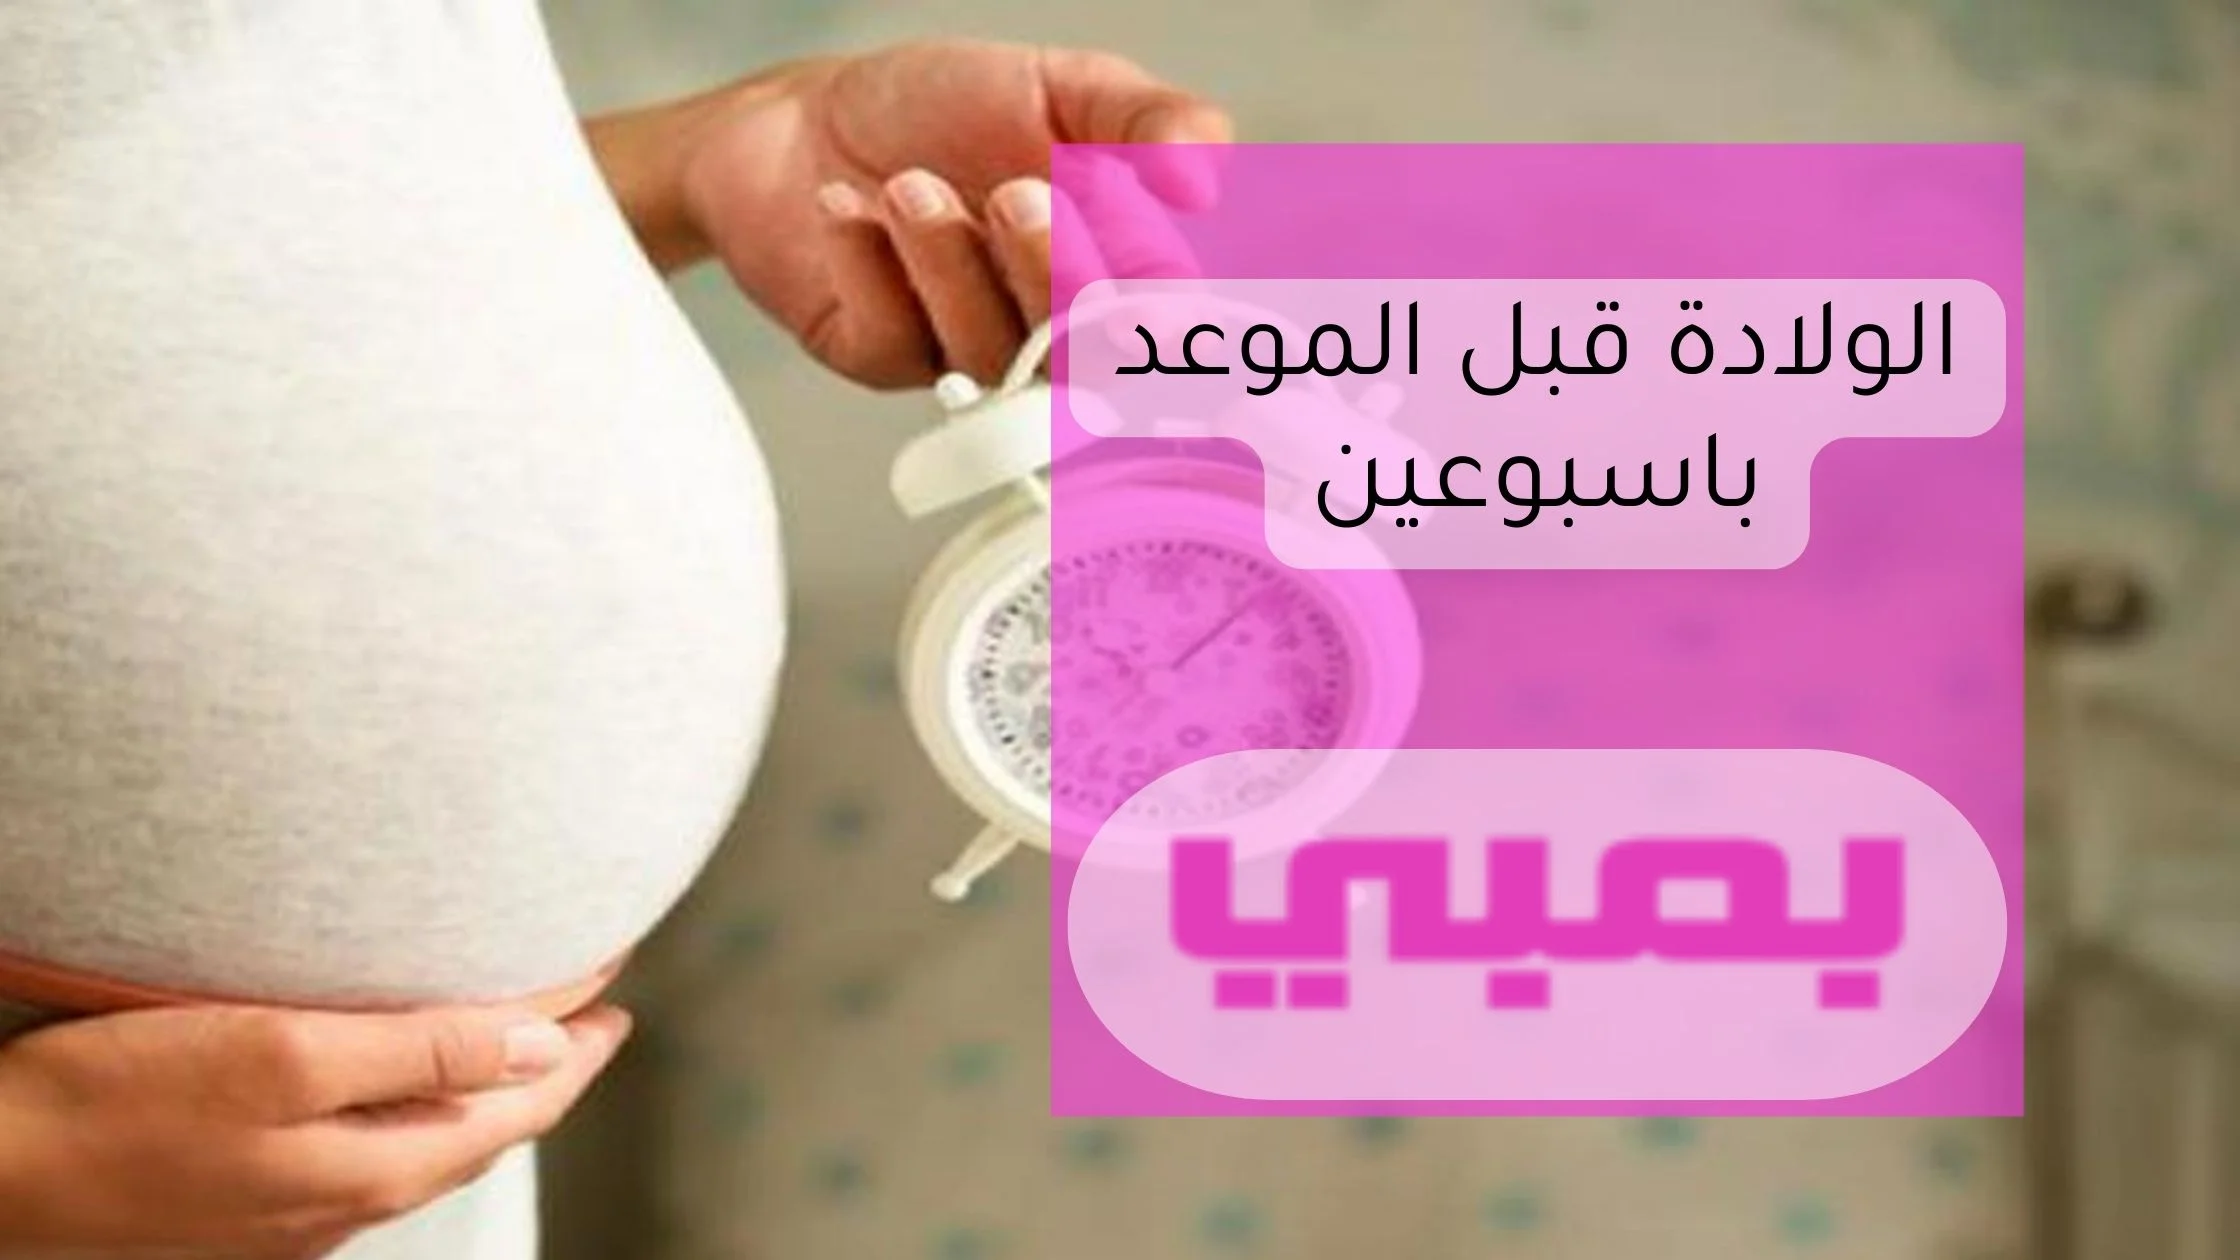 الولادة قبل الموعد بأسبوعين تحديات واستعدادات